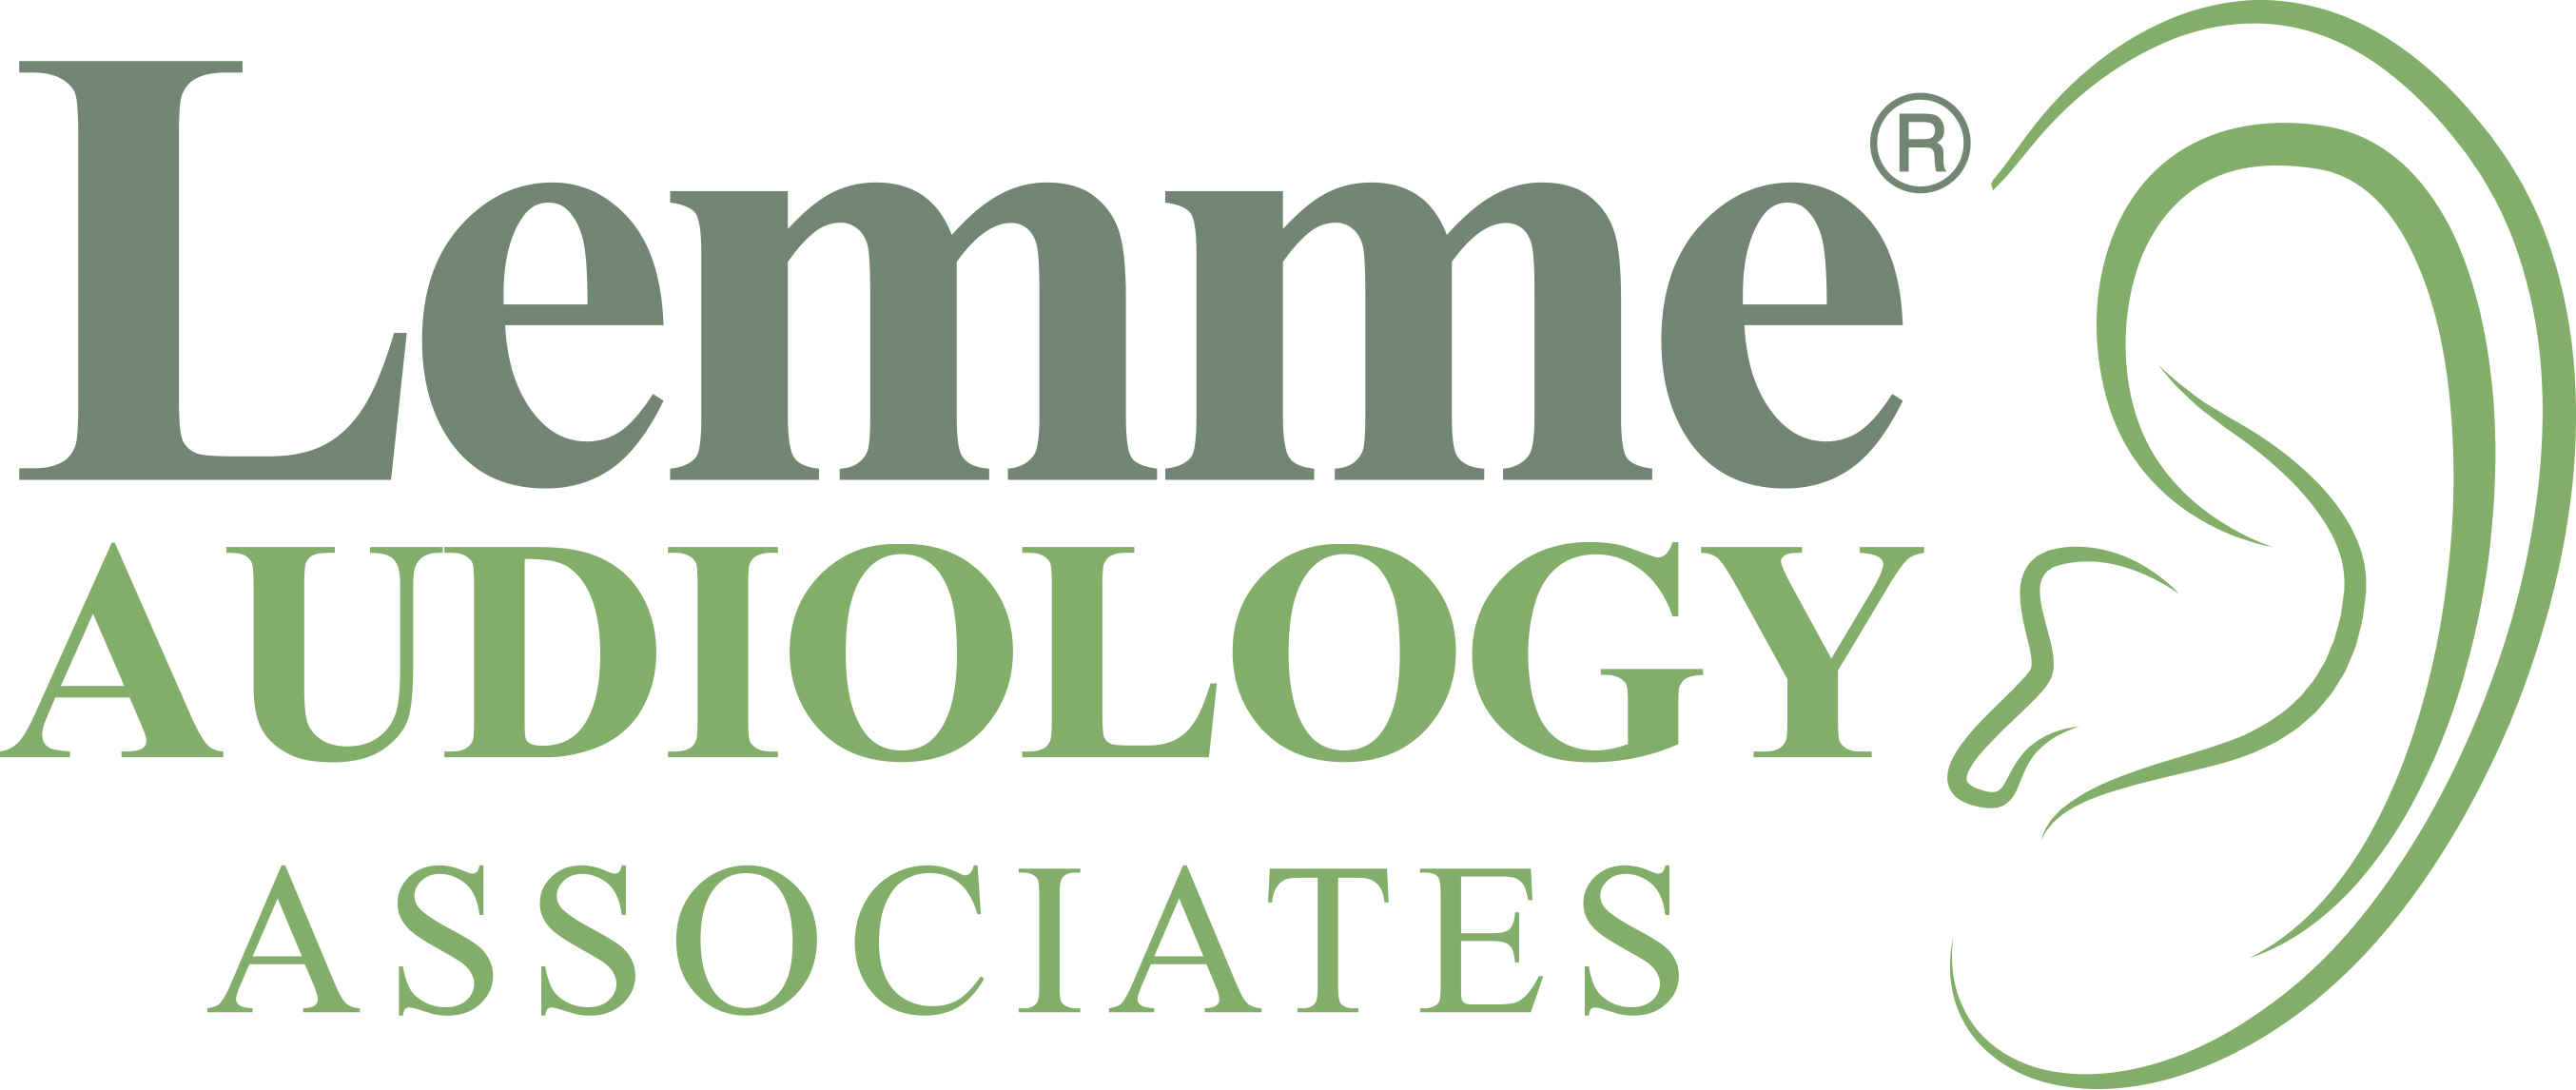 Lemme Audiology Associates logo